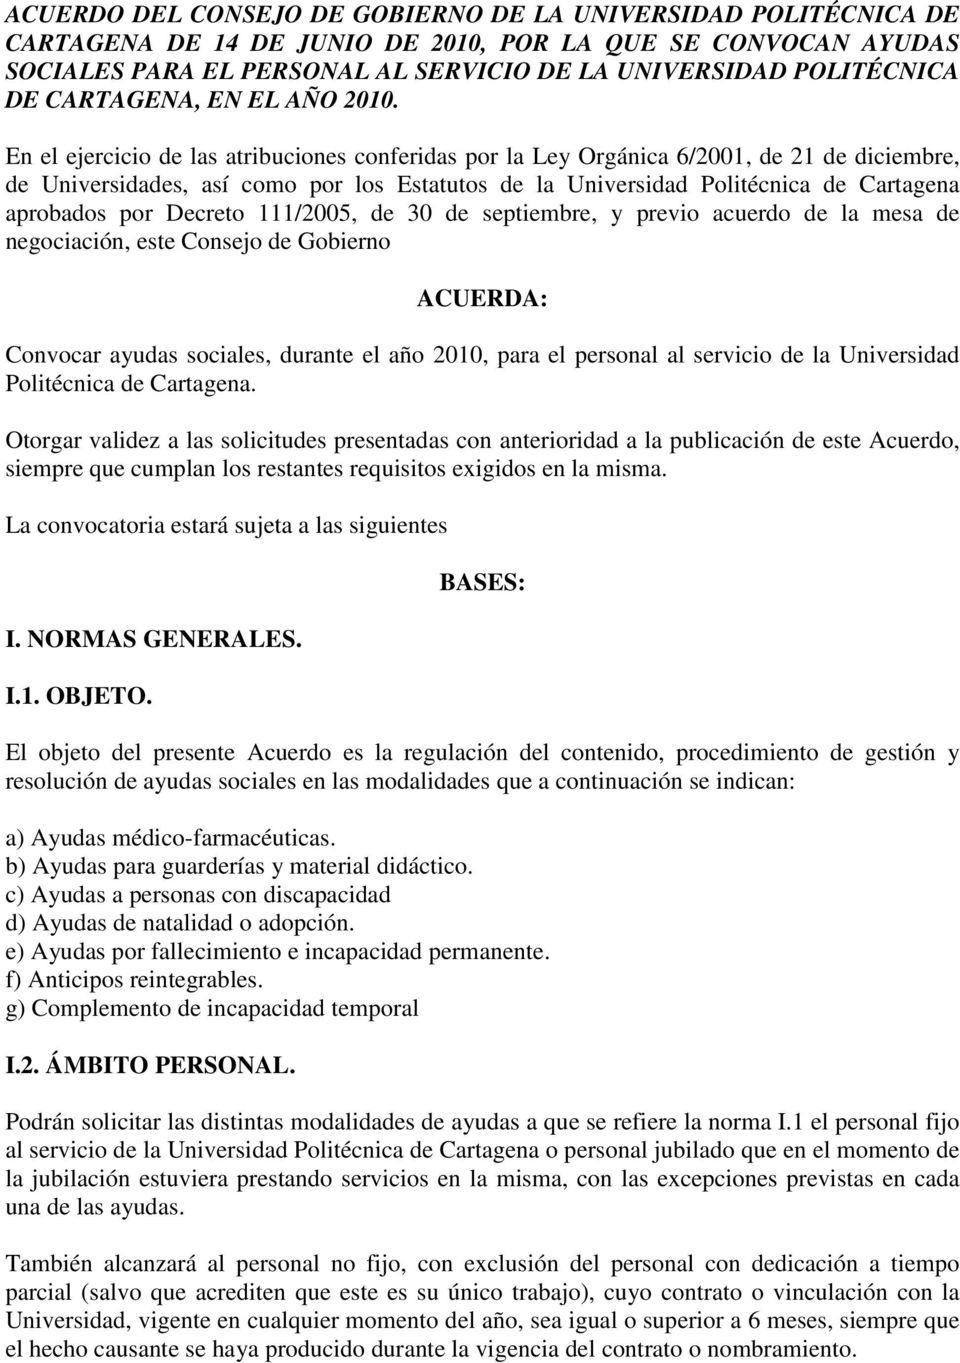 En el ejercicio de las atribuciones conferidas por la Ley Orgánica 6/2001, de 21 de diciembre, de Universidades, así como por los Estatutos de la Universidad Politécnica de Cartagena aprobados por